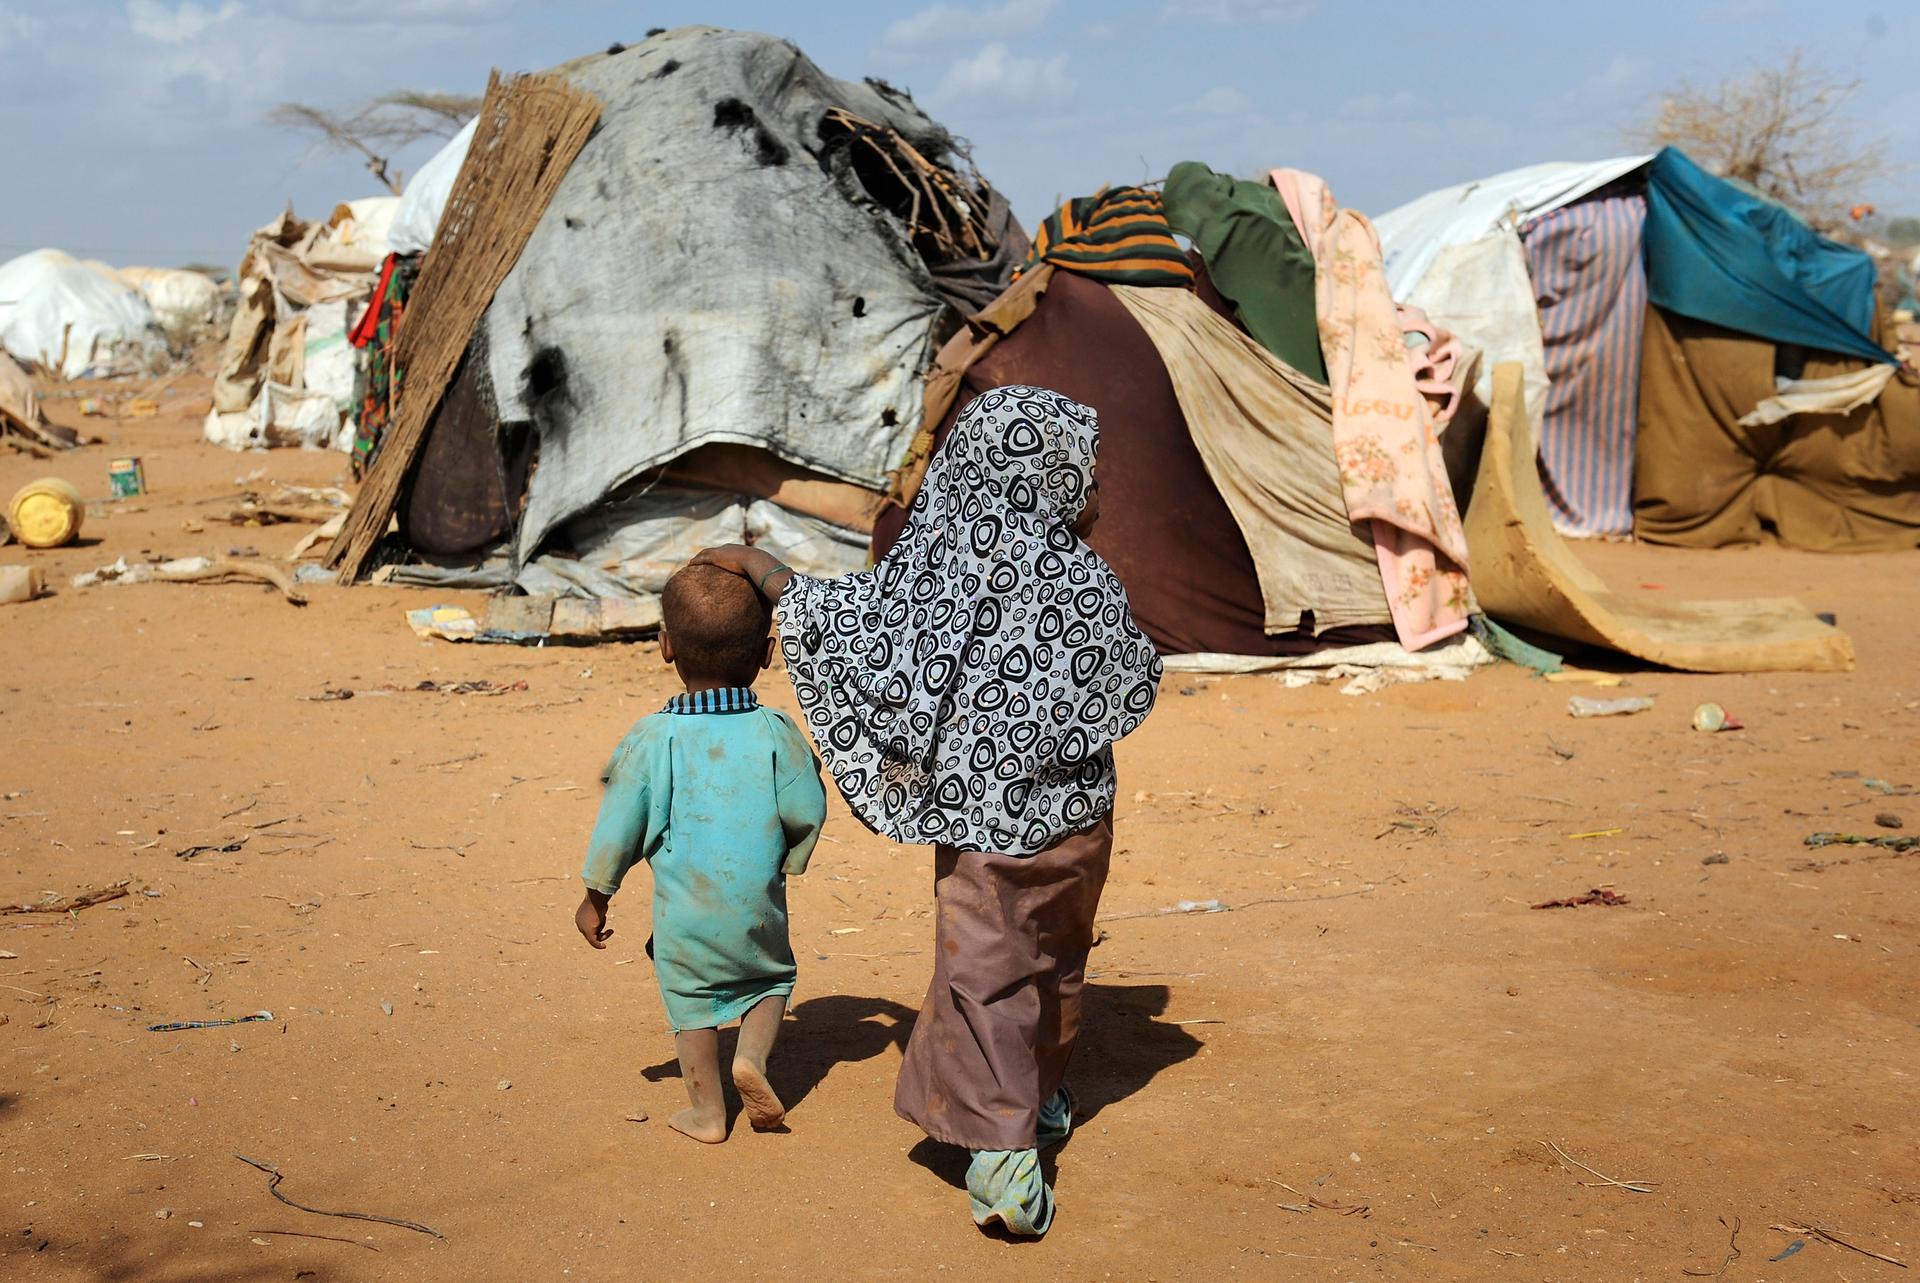 Children walk together among makeshift homes, or 